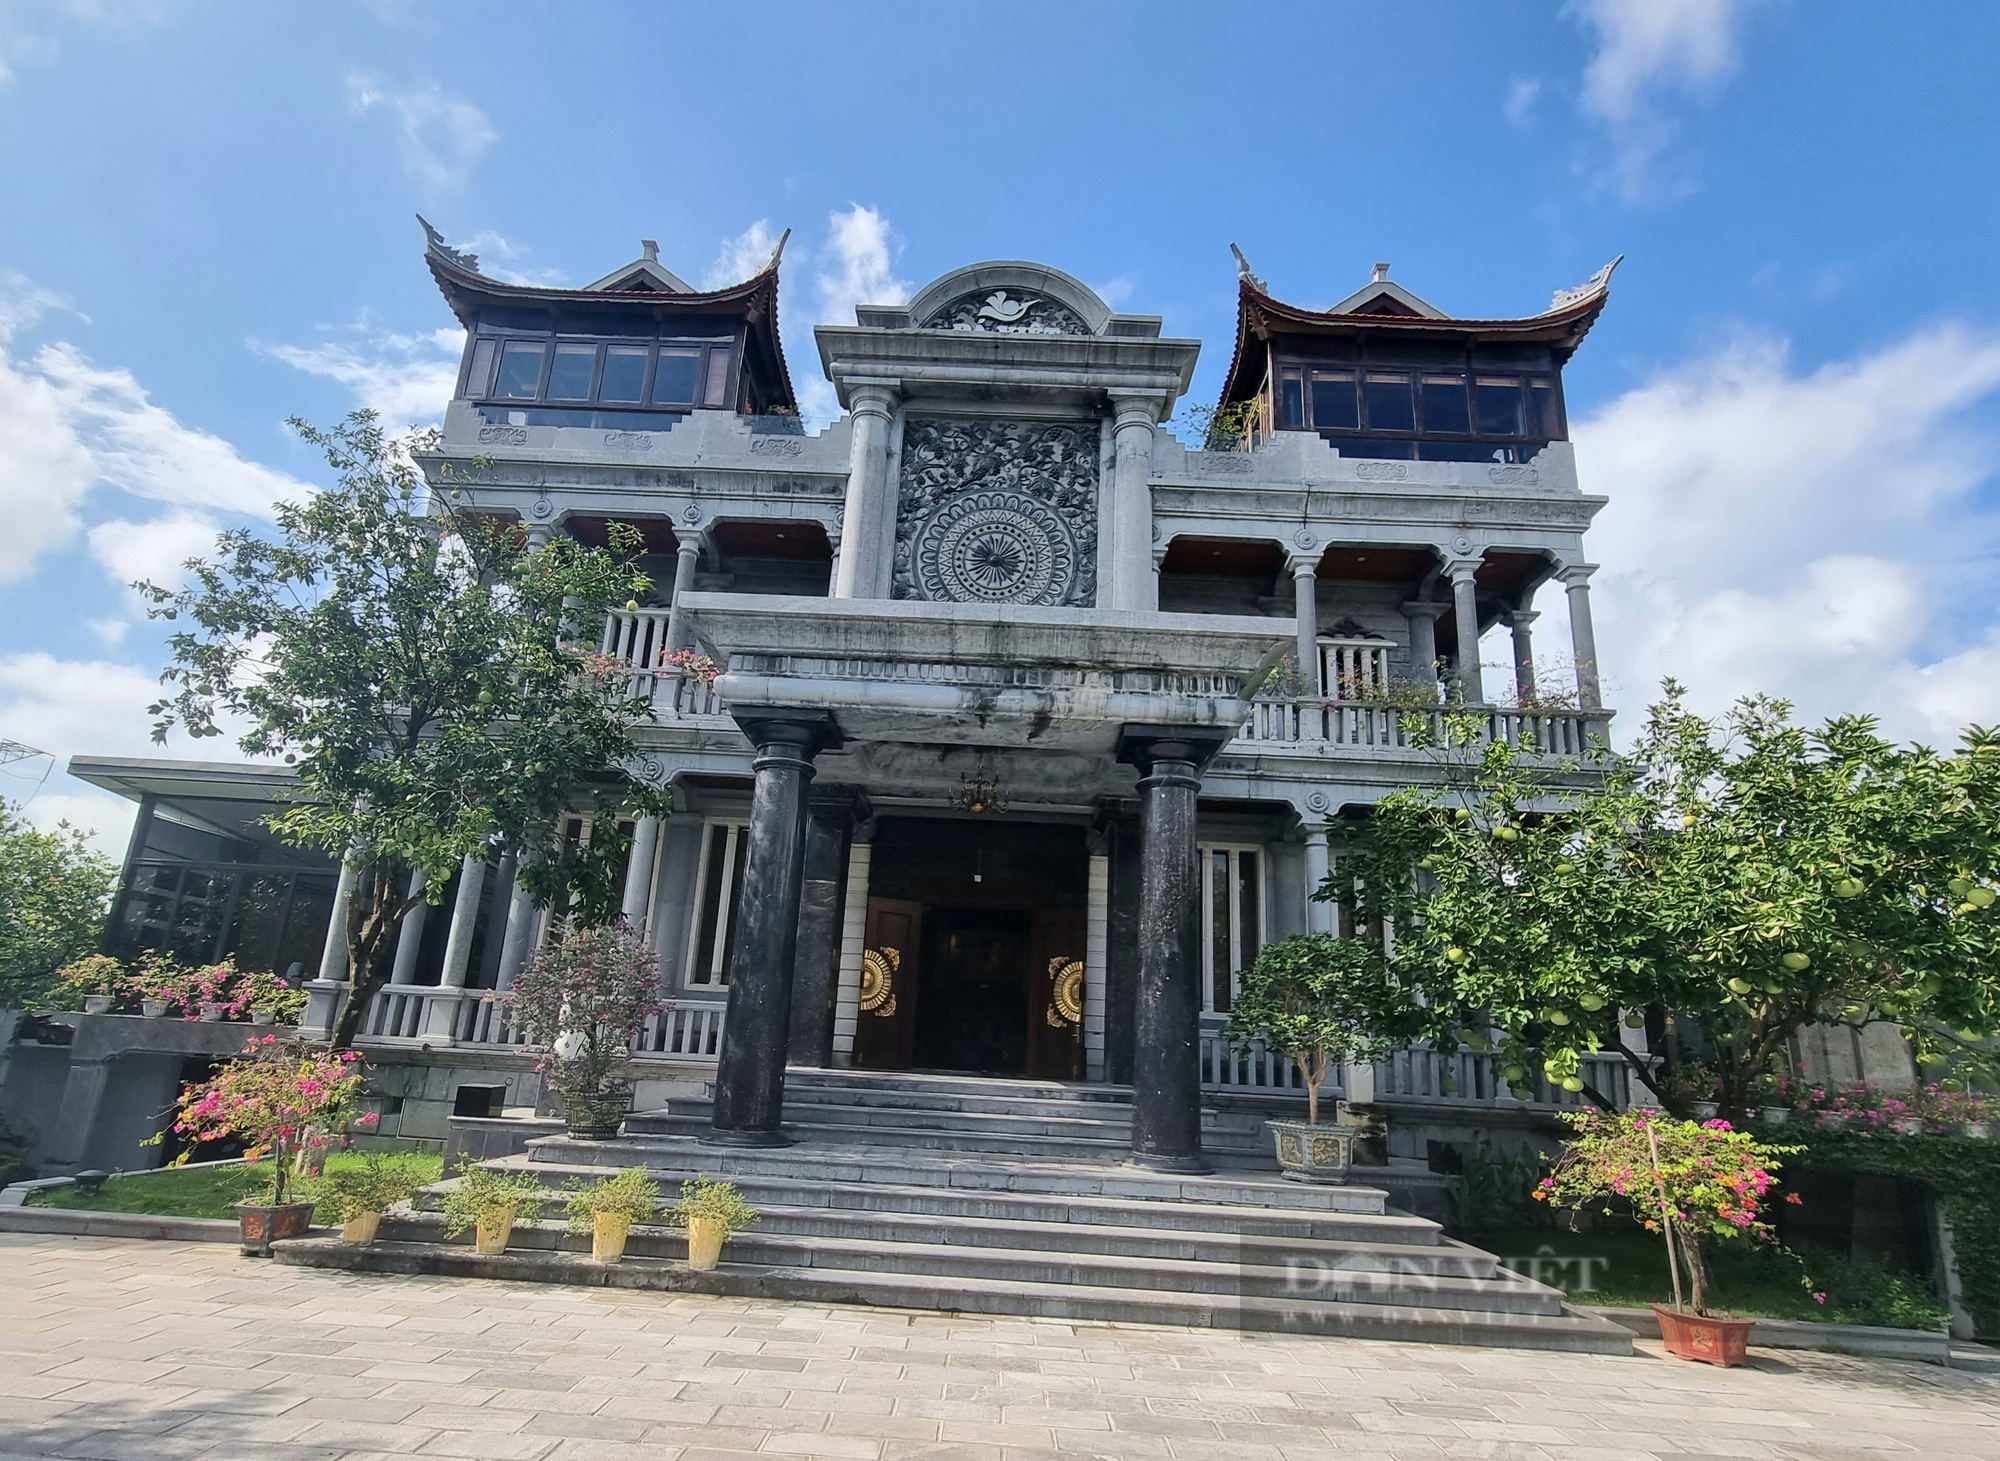 Chiêm ngưỡng ngôi nhà đá 3 tầng “độc nhất vô nhị” ở Ninh Bình - Ảnh 11.